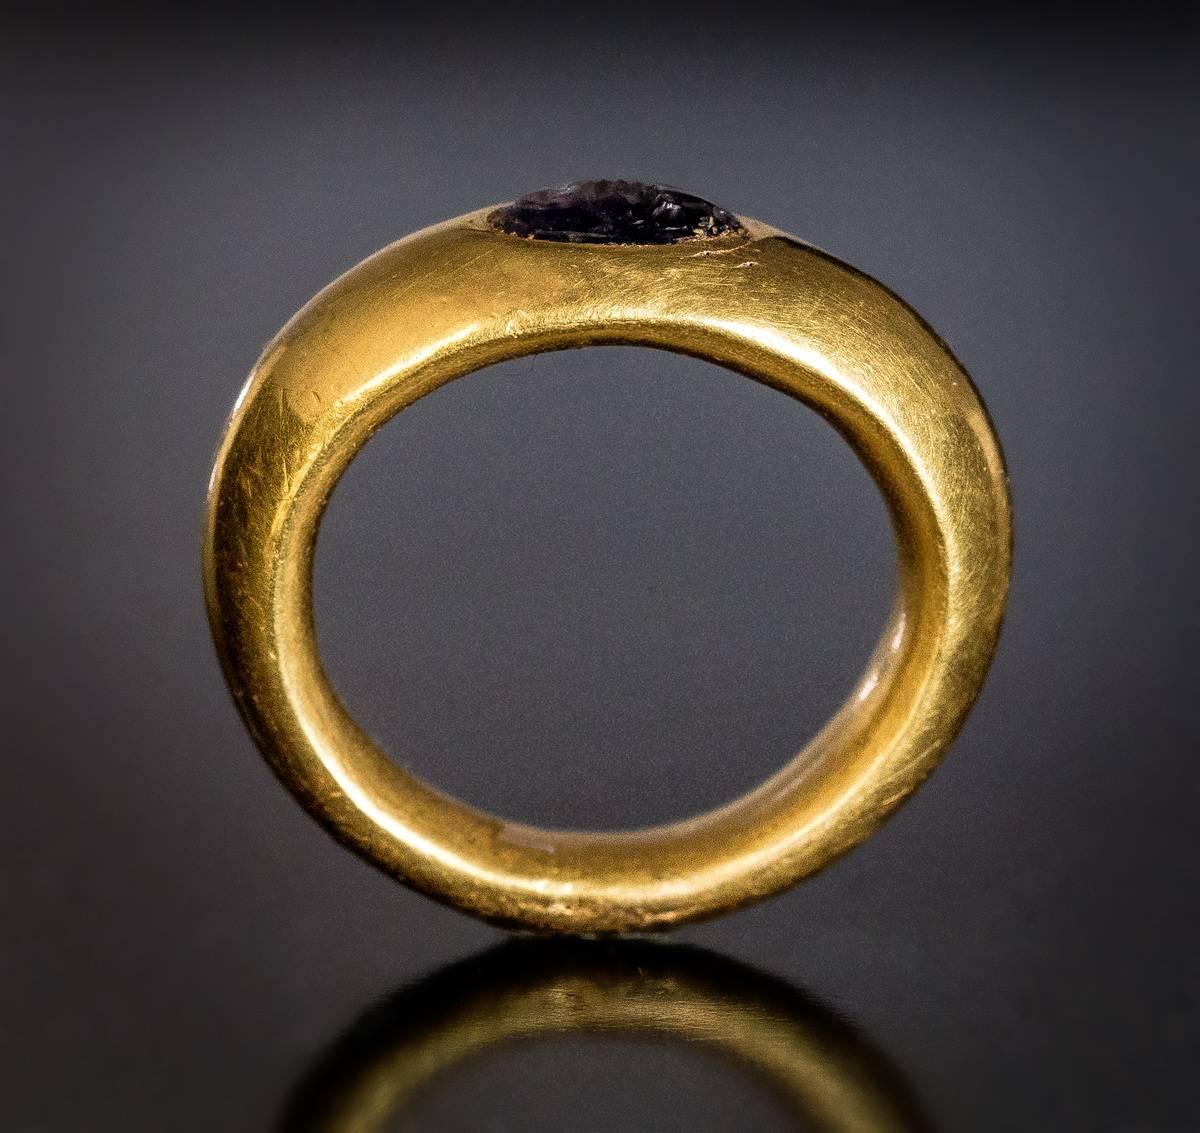 Römisch, ca. 2. bis 1. Jahrhundert v. Chr.

Ein hohler Siegelring aus Gold in Museumsqualität, fein modelliert, mit hohem Karatgehalt (ca. 22,5 K), ist mit einem ovalen Amethyst-Intaglio besetzt.
Auf dem Stichtiefdruck ist eine Wölfin, das Symbol